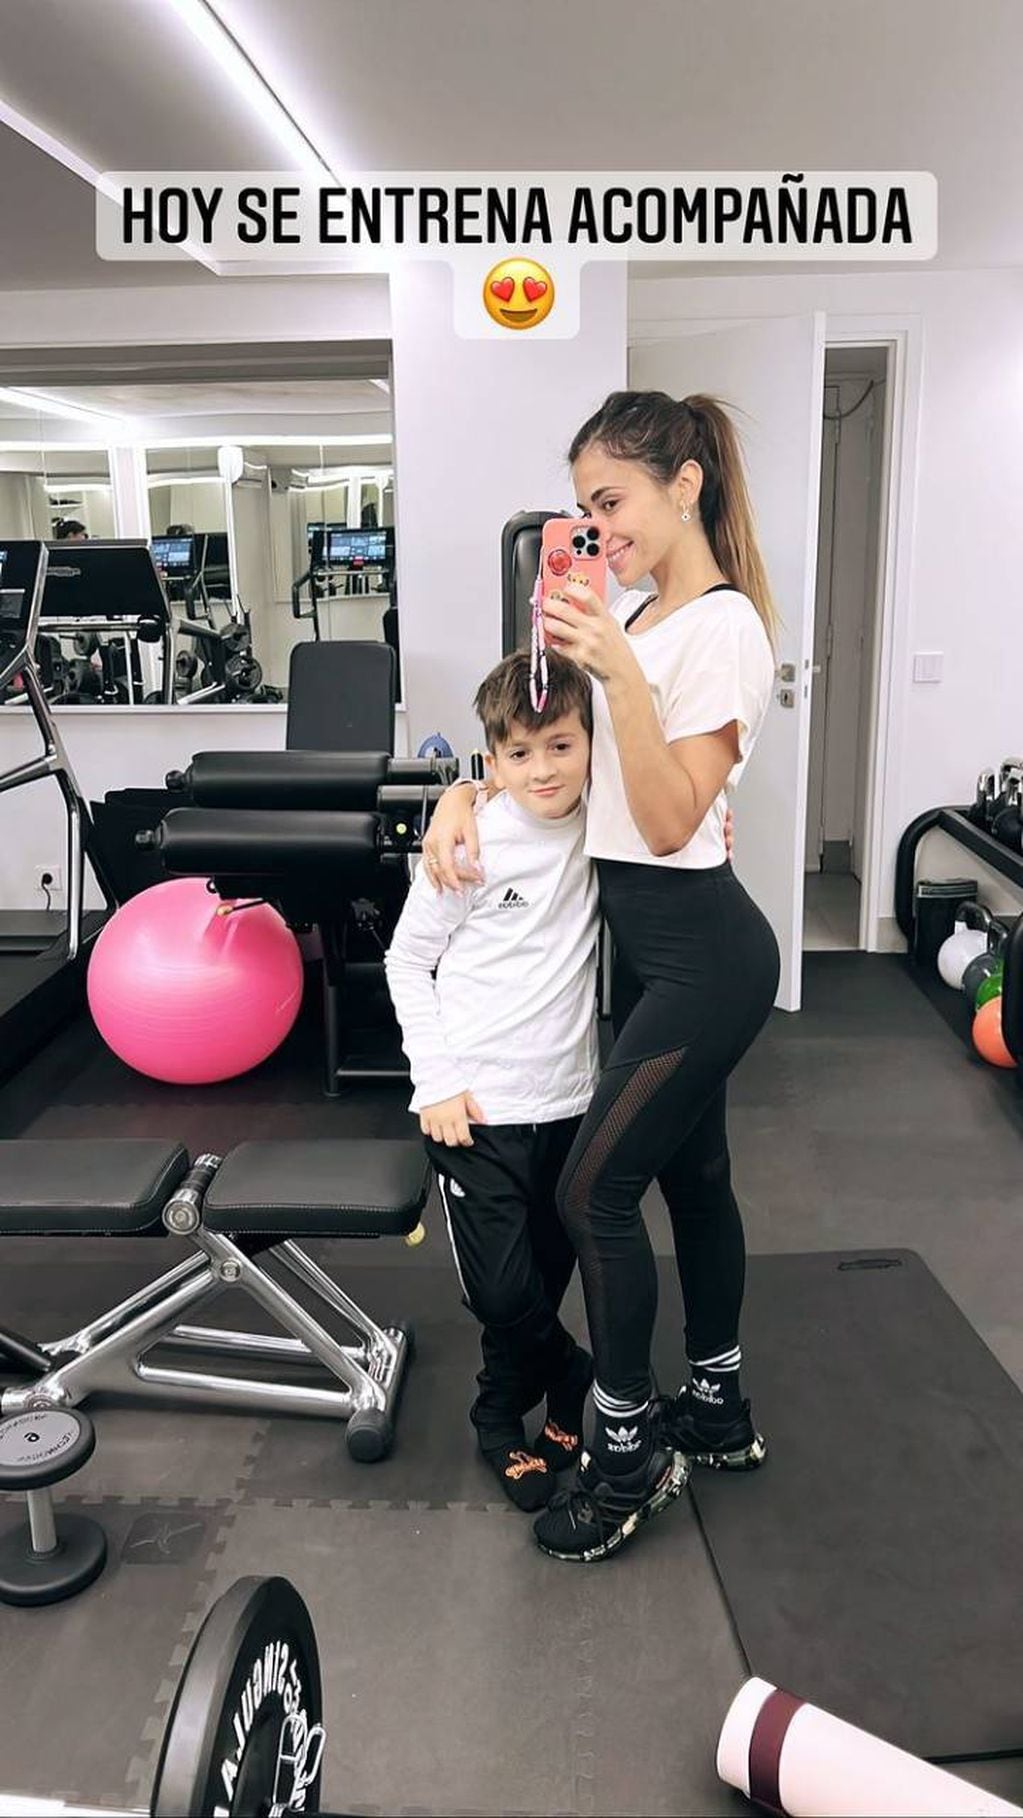 Antonela Roccuzzo fue a entrenar al gimnasio acompañada por su hijo mayor Thiago Messi.